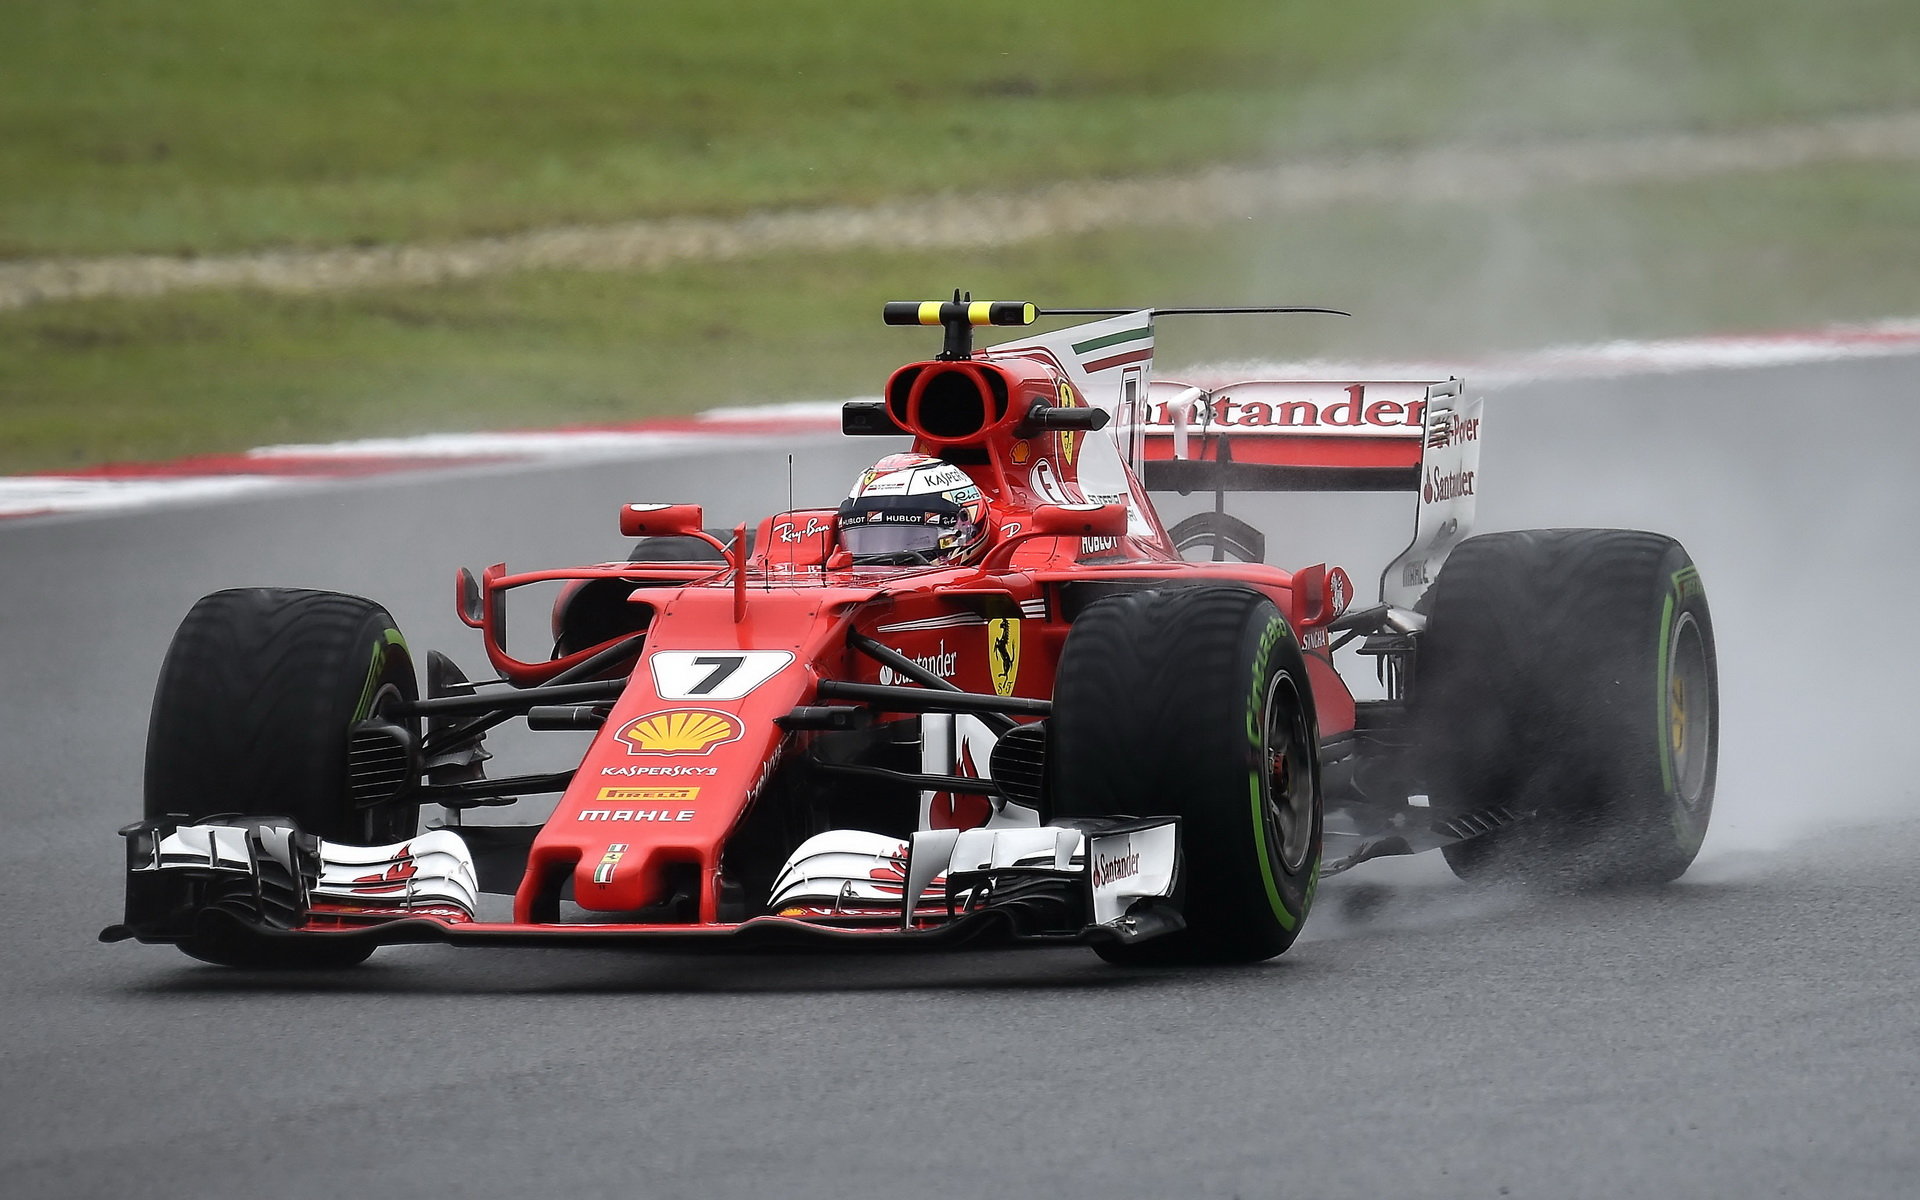 Kimi Räikkönen za deštivého tréninku v Malajsii